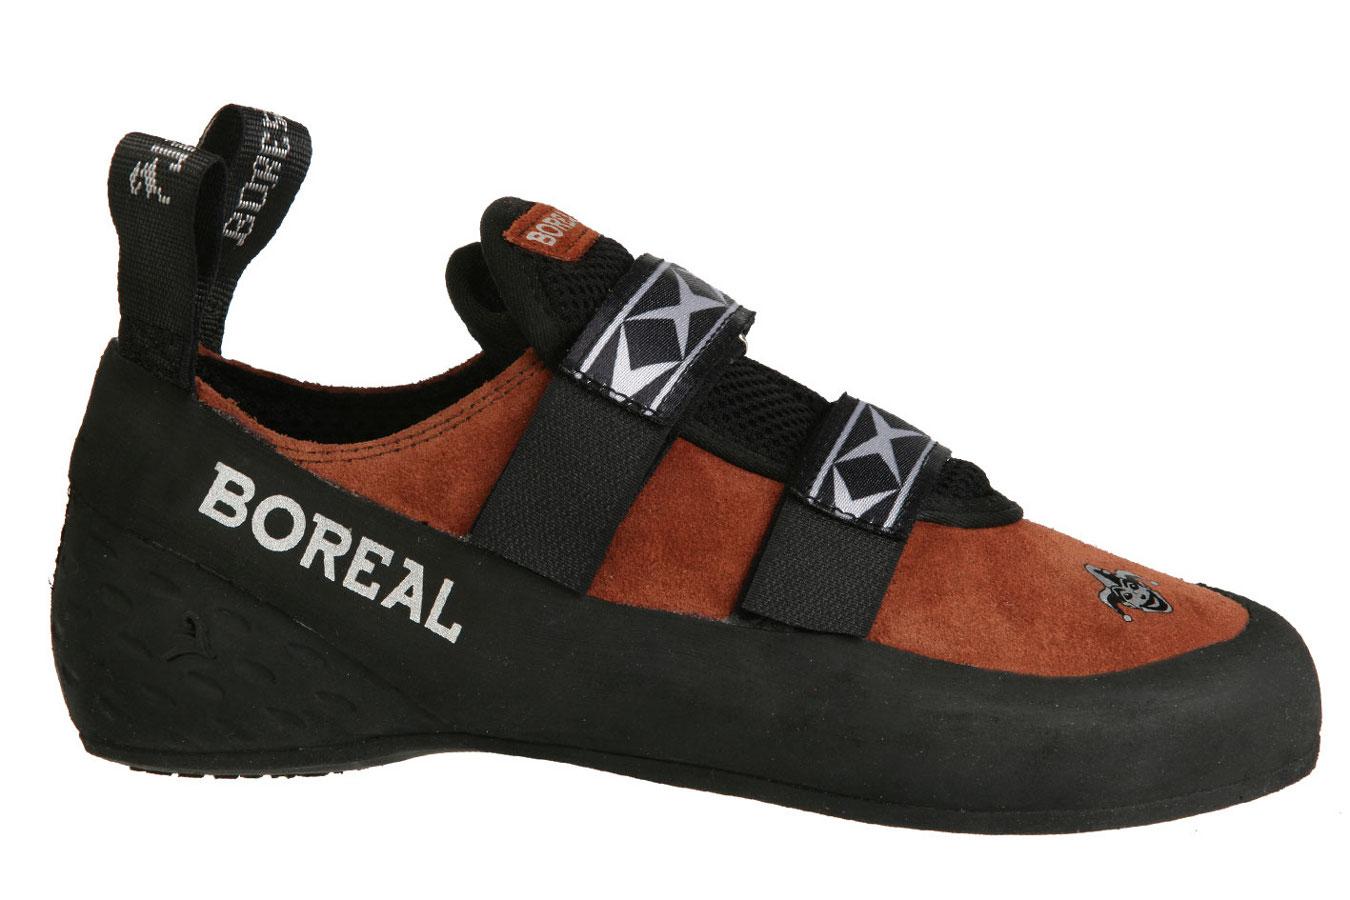 Foto Boreal Joker Velcro Zapatillas para escalada marrón/negro, 44,5